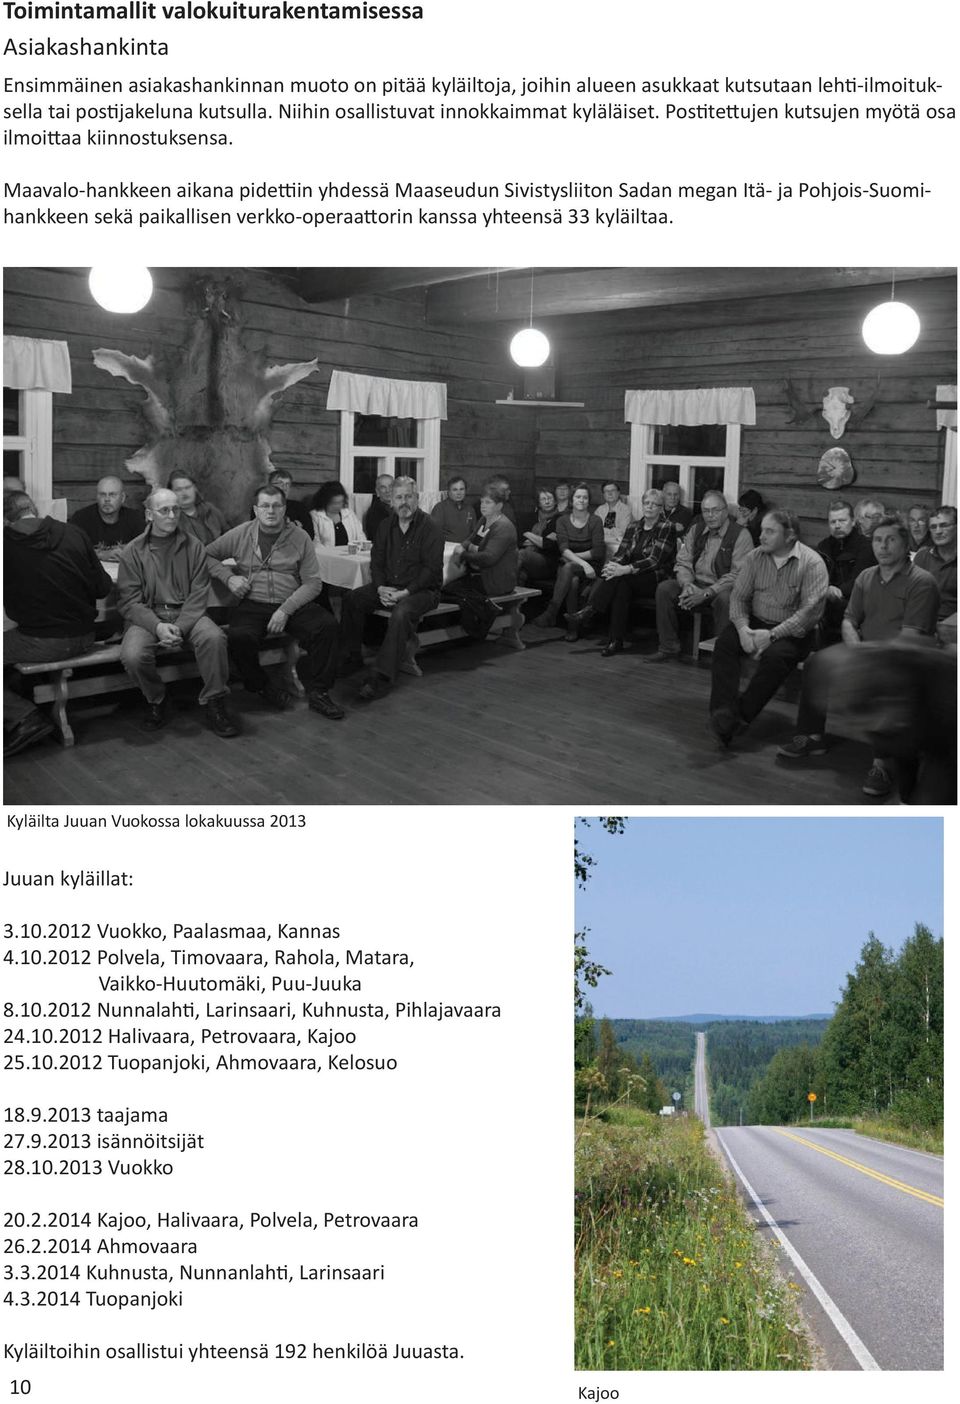 Maavalo-hankkeen aikana pidettiin yhdessä Maaseudun Sivistysliiton Sadan megan Itä- ja Pohjois-Suomihankkeen sekä paikallisen verkko-operaattorin kanssa yhteensä 33 kyläiltaa.